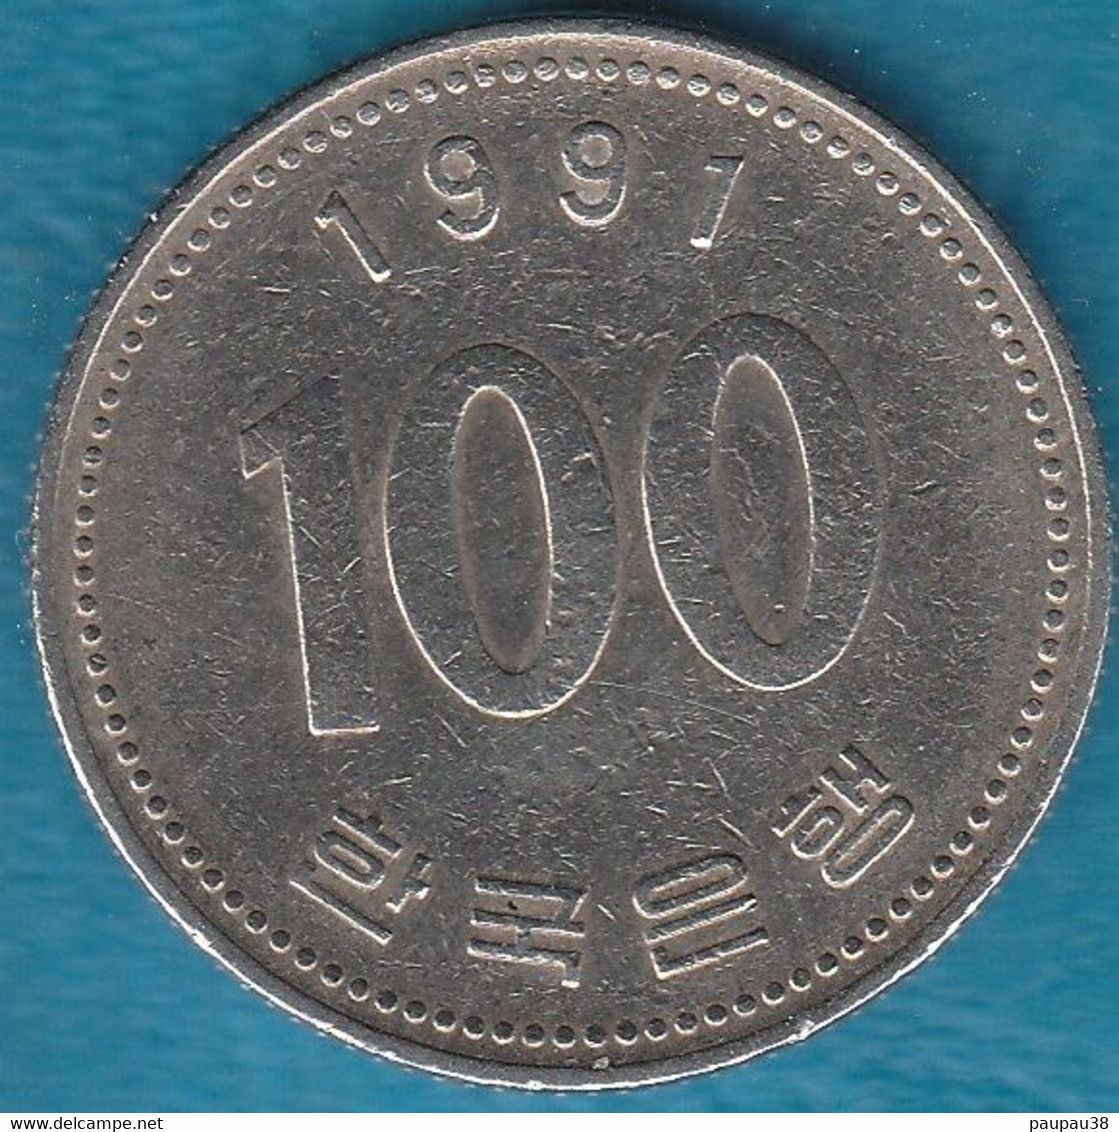 N° 4 - COREE 100 WON 1991 - Corée Du Nord